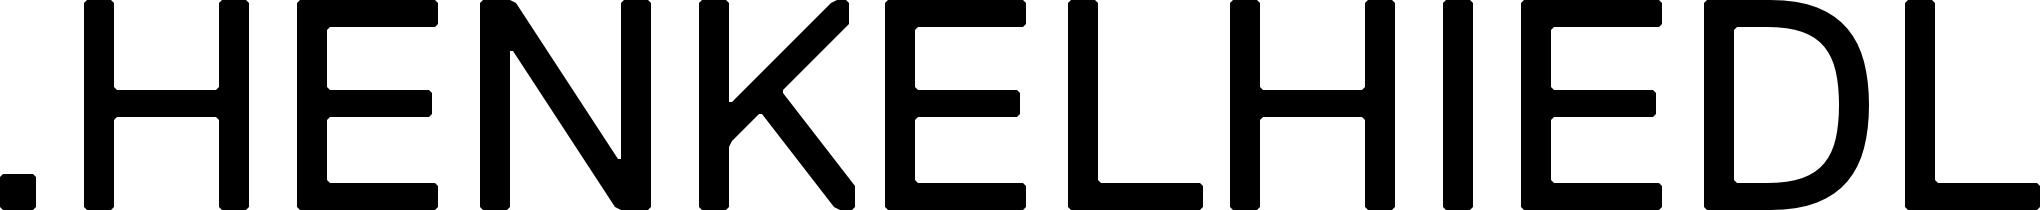 Logo_HENKELHIEDL.png